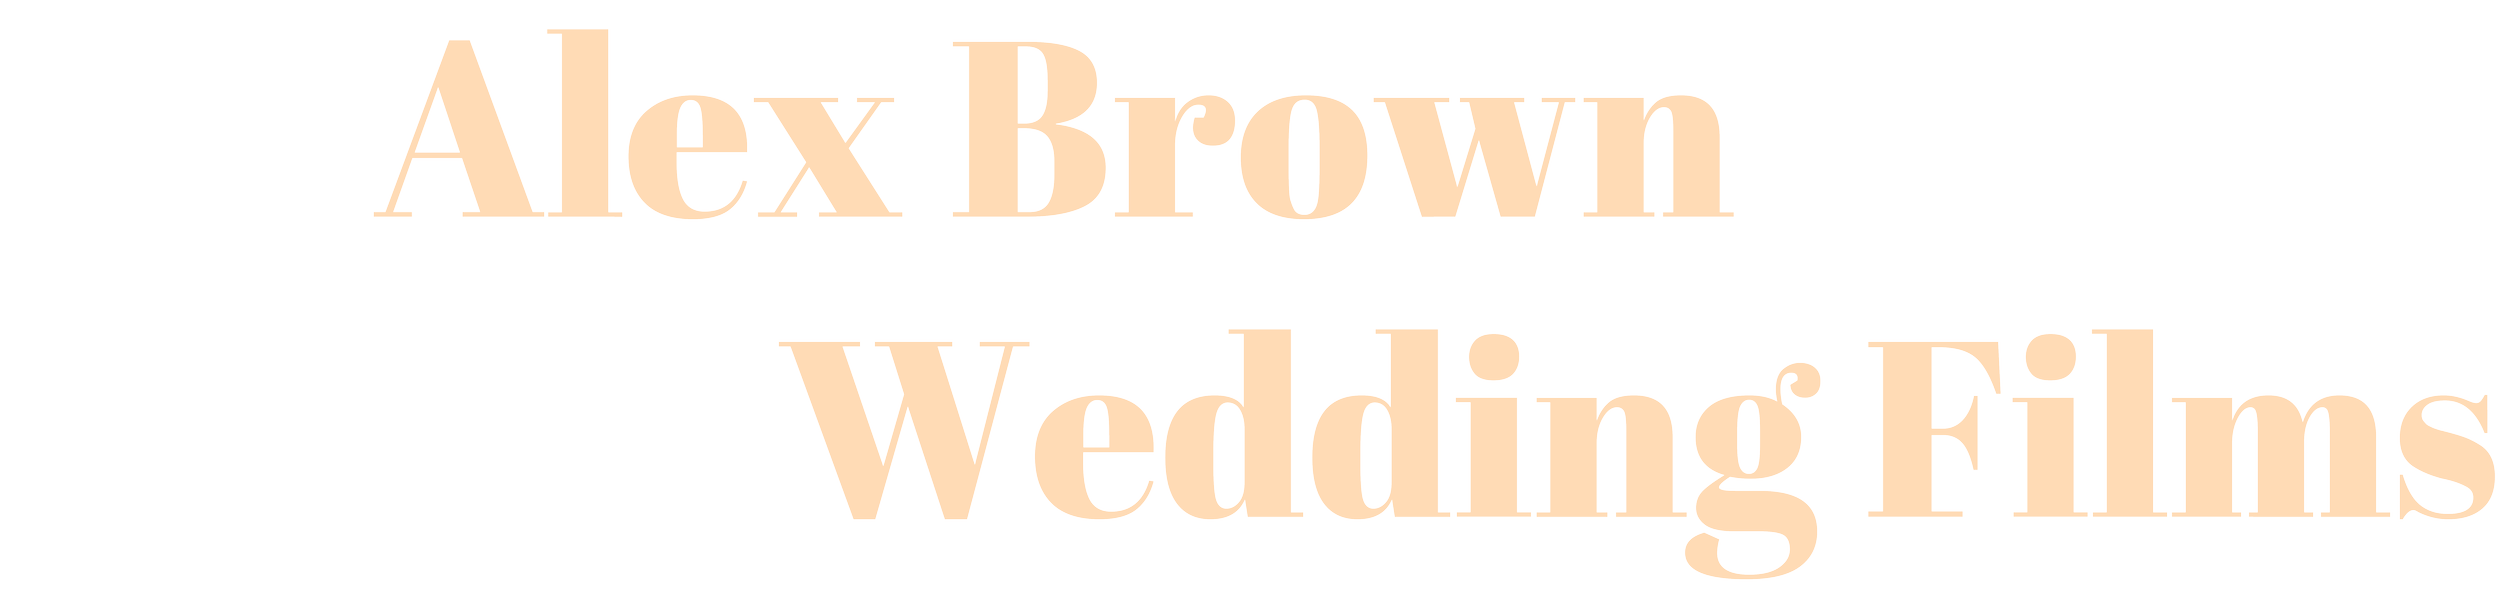 Alex Brown Weddings